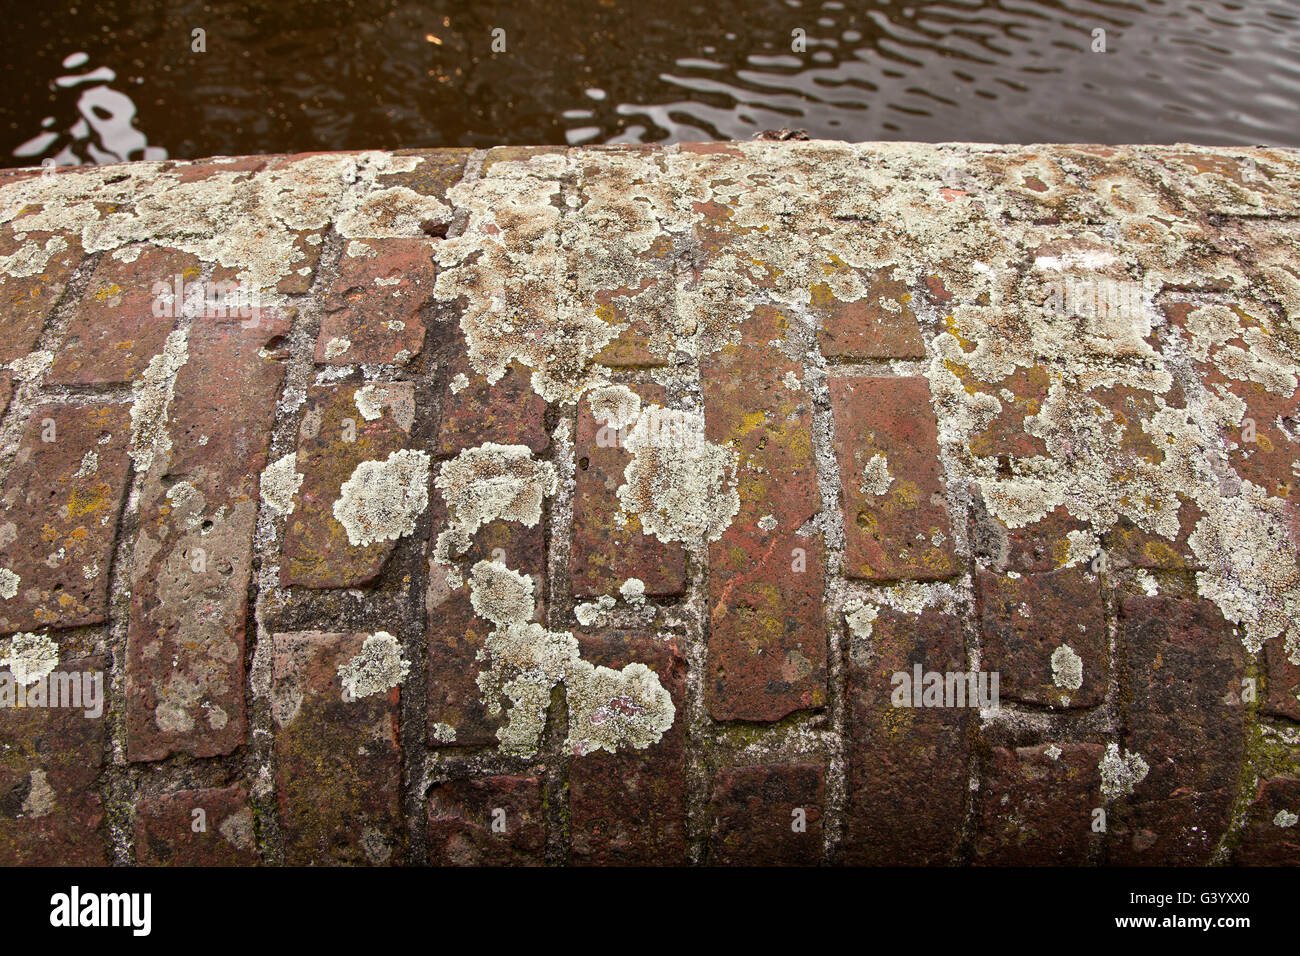 Les lichens mixtes poussant sur un côté canal mur de brique rouge, Amsterdam, Pays-Bas Banque D'Images